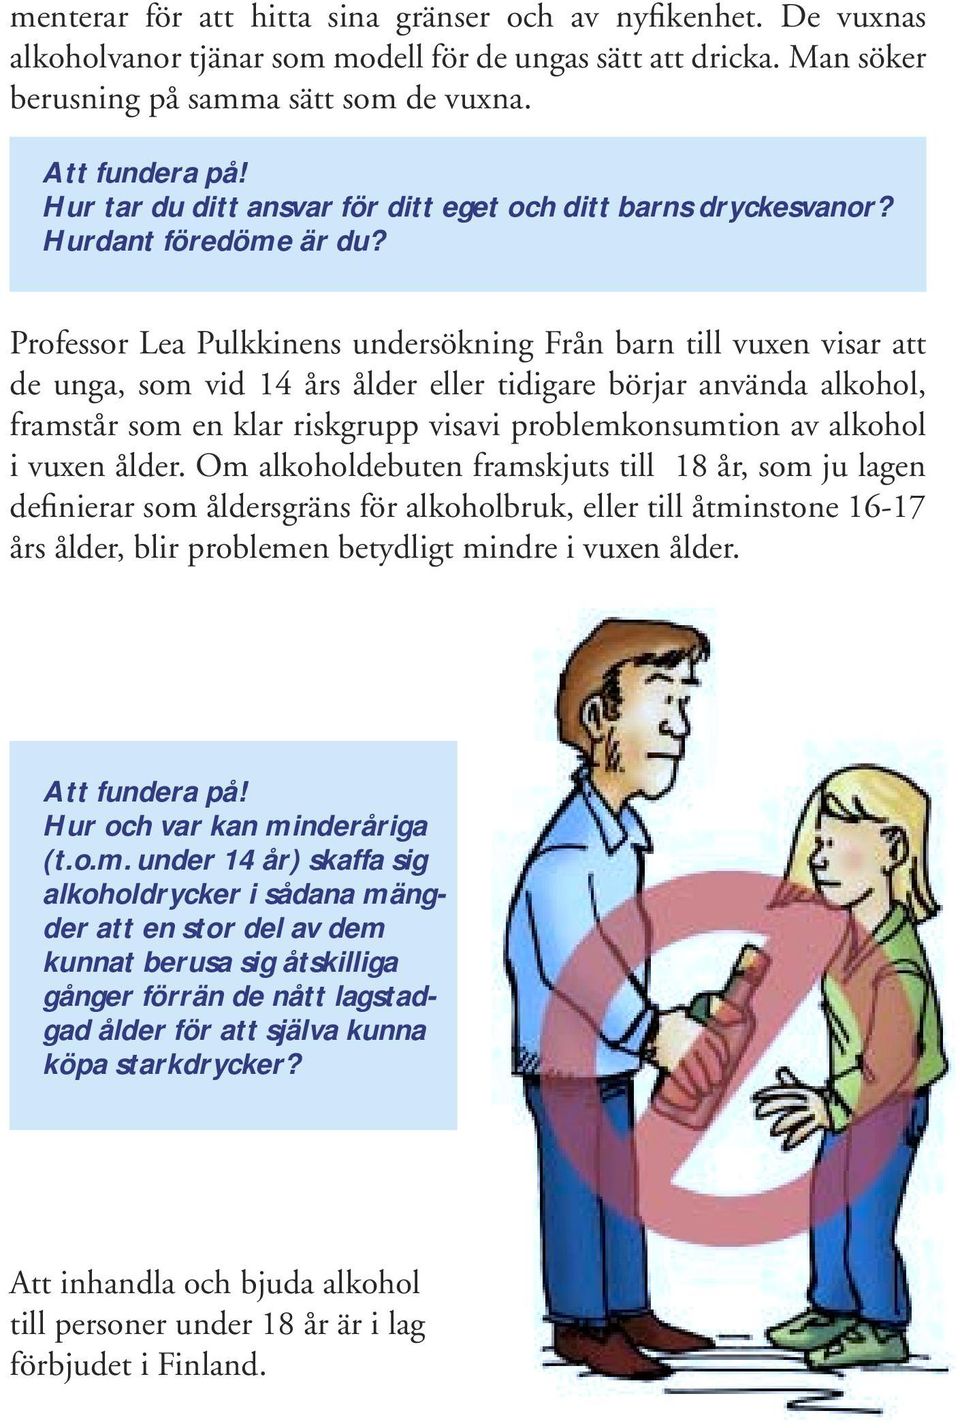 Professor Lea Pulkkinens undersökning Från barn till vuxen visar att de unga, som vid 14 års ålder eller tidigare börjar använda alkohol, framstår som en klar riskgrupp visavi problemkonsumtion av